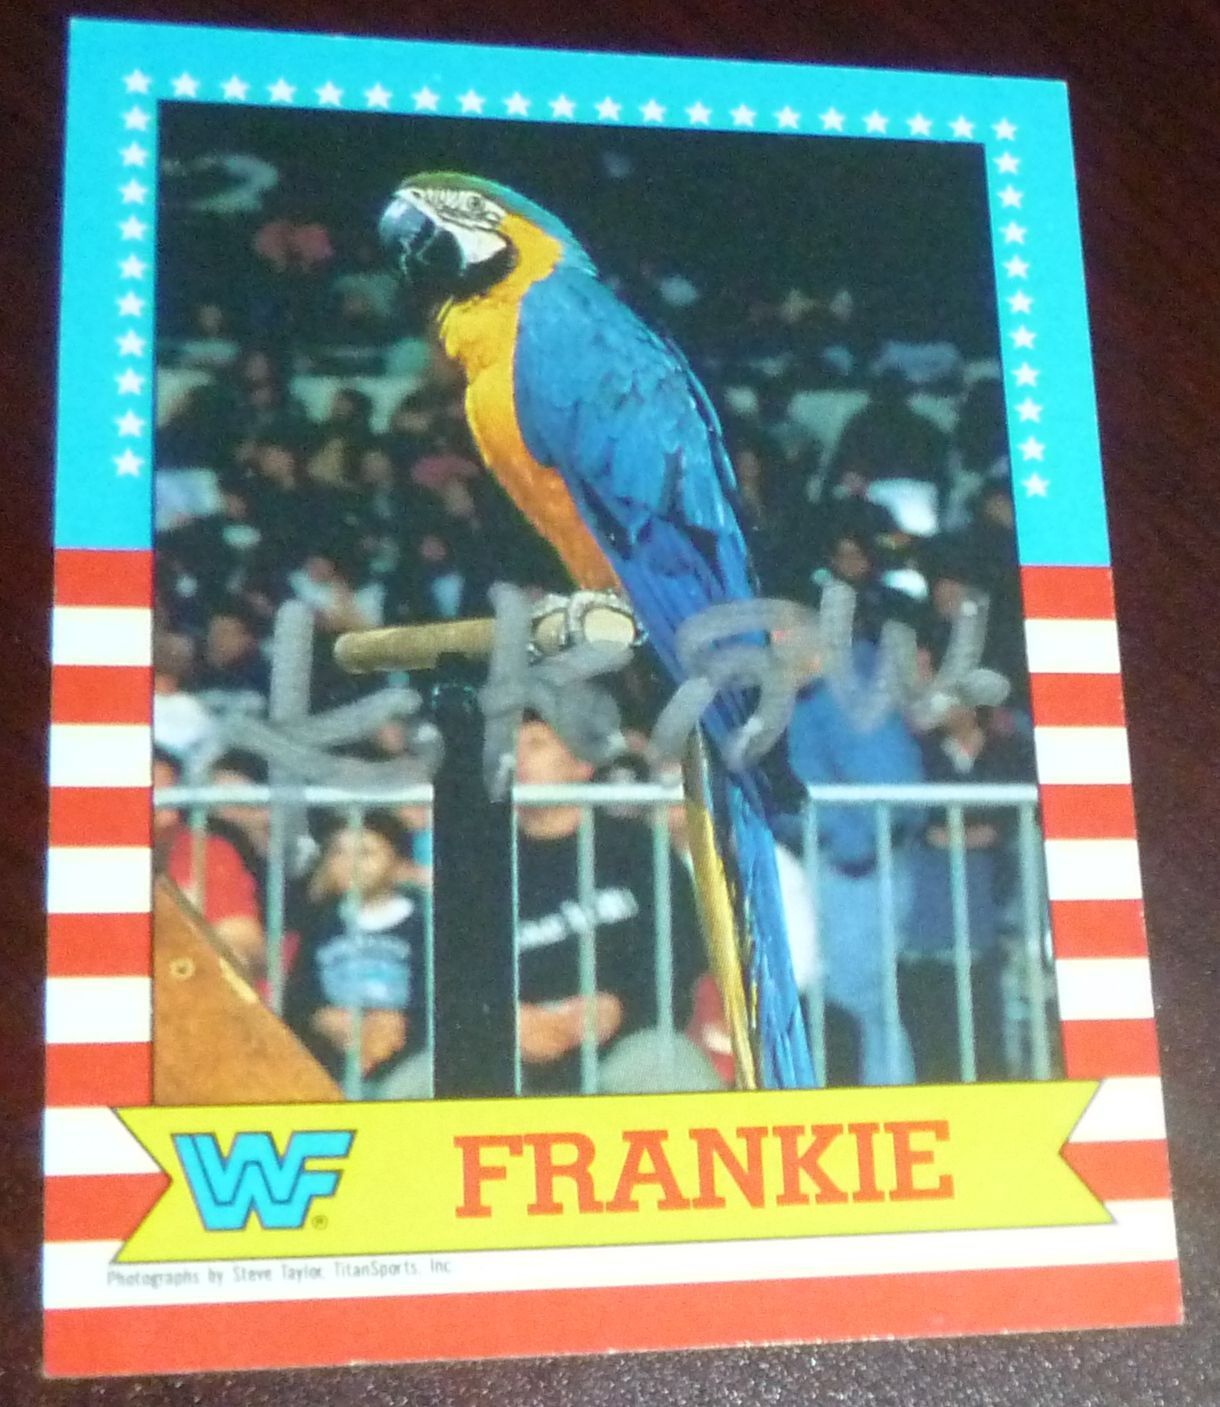 WWF Koko B. Ware Frankie card